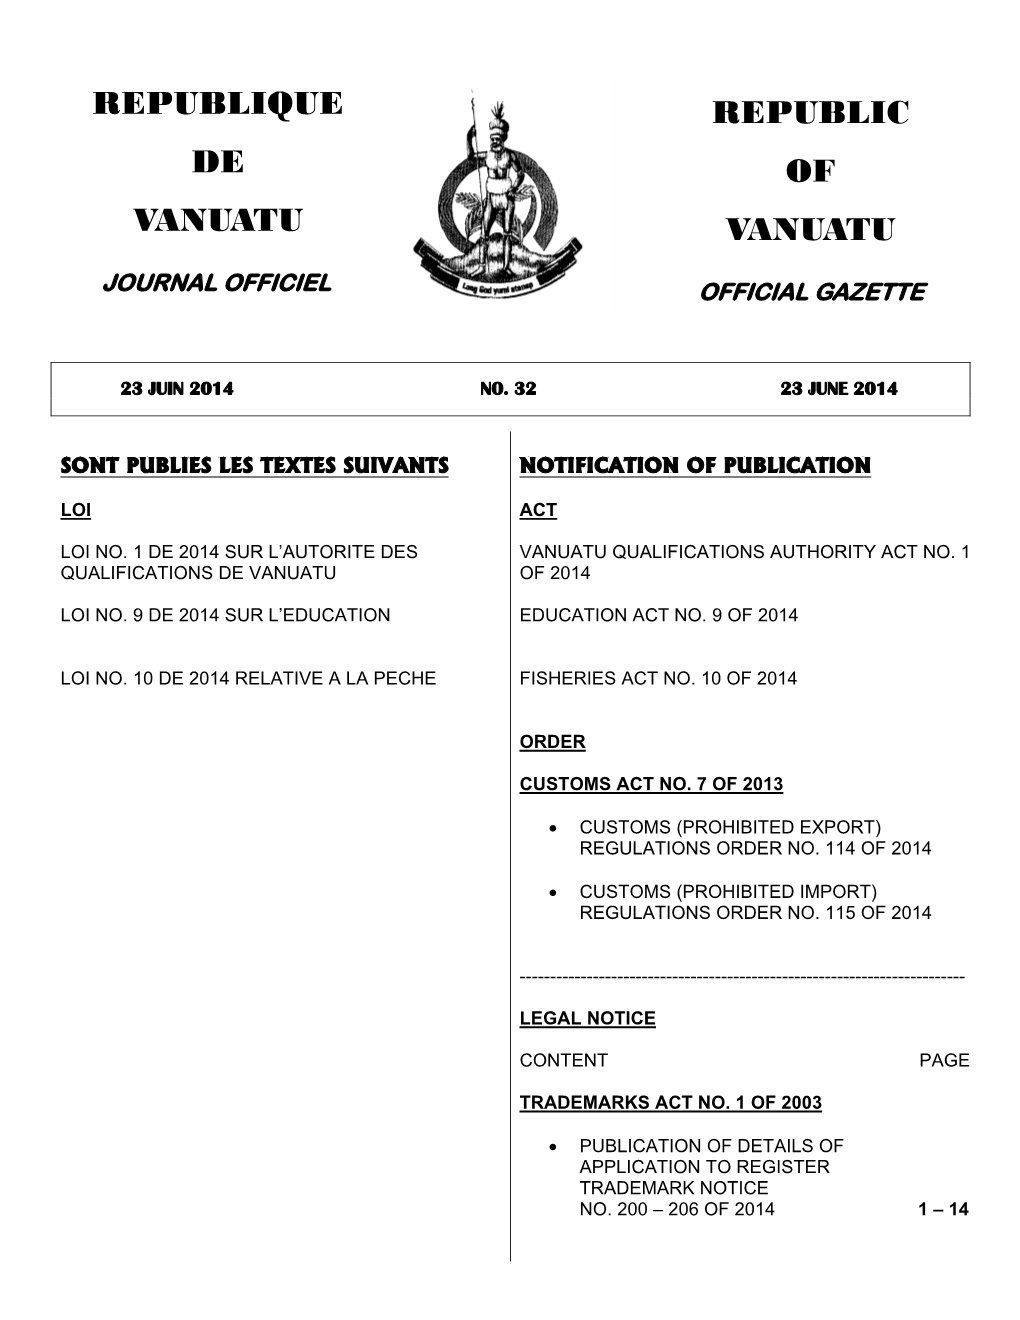 Republic of Vanuatu Republique De Vanuatu